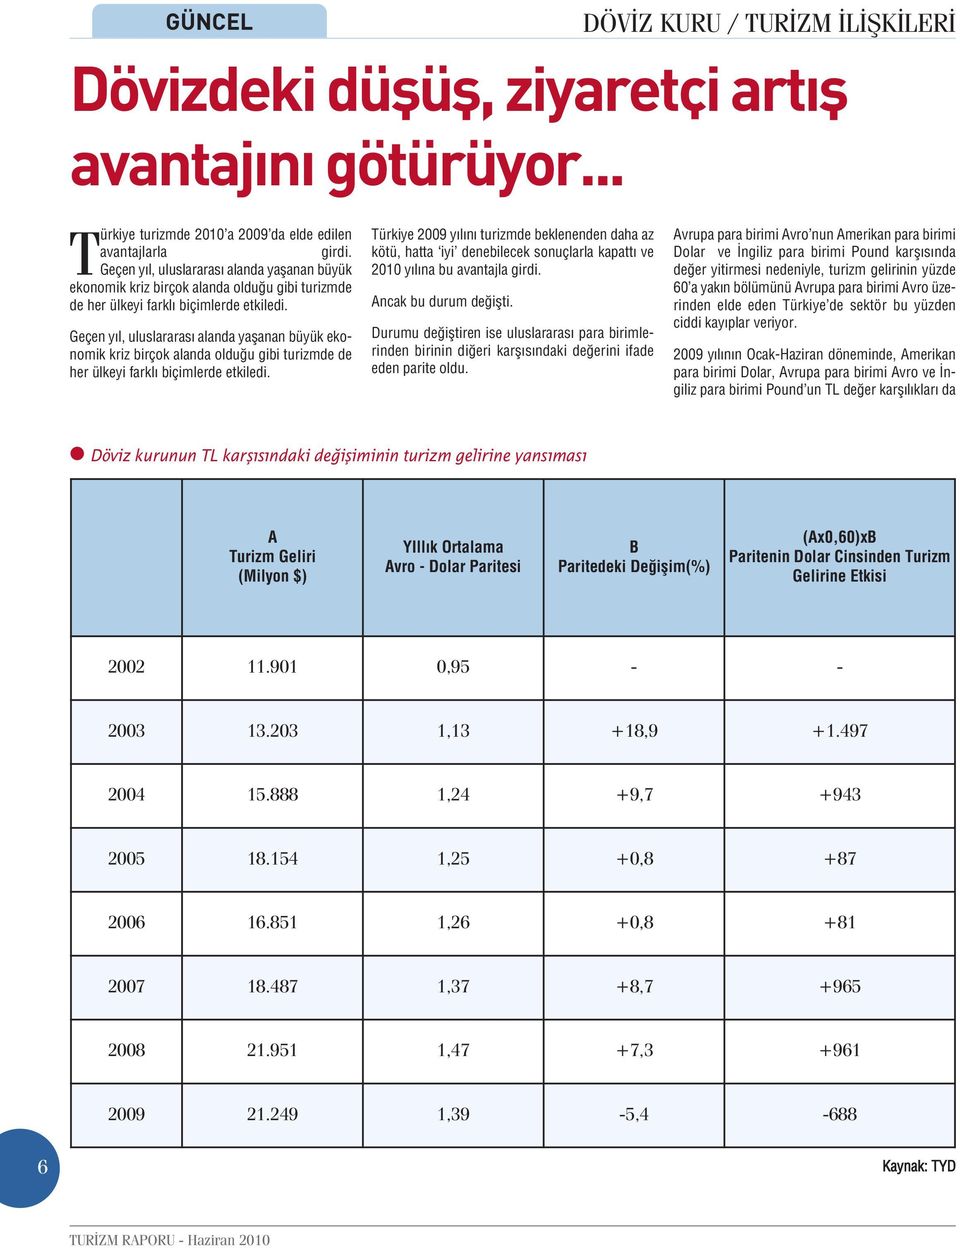 Türkiye 2009 yılını turizmde beklenenden daha az kötü, hatta iyi denebilecek sonuçlarla kapattı ve 2010 yılına bu avantajla girdi. Ancak bu durum değişti.